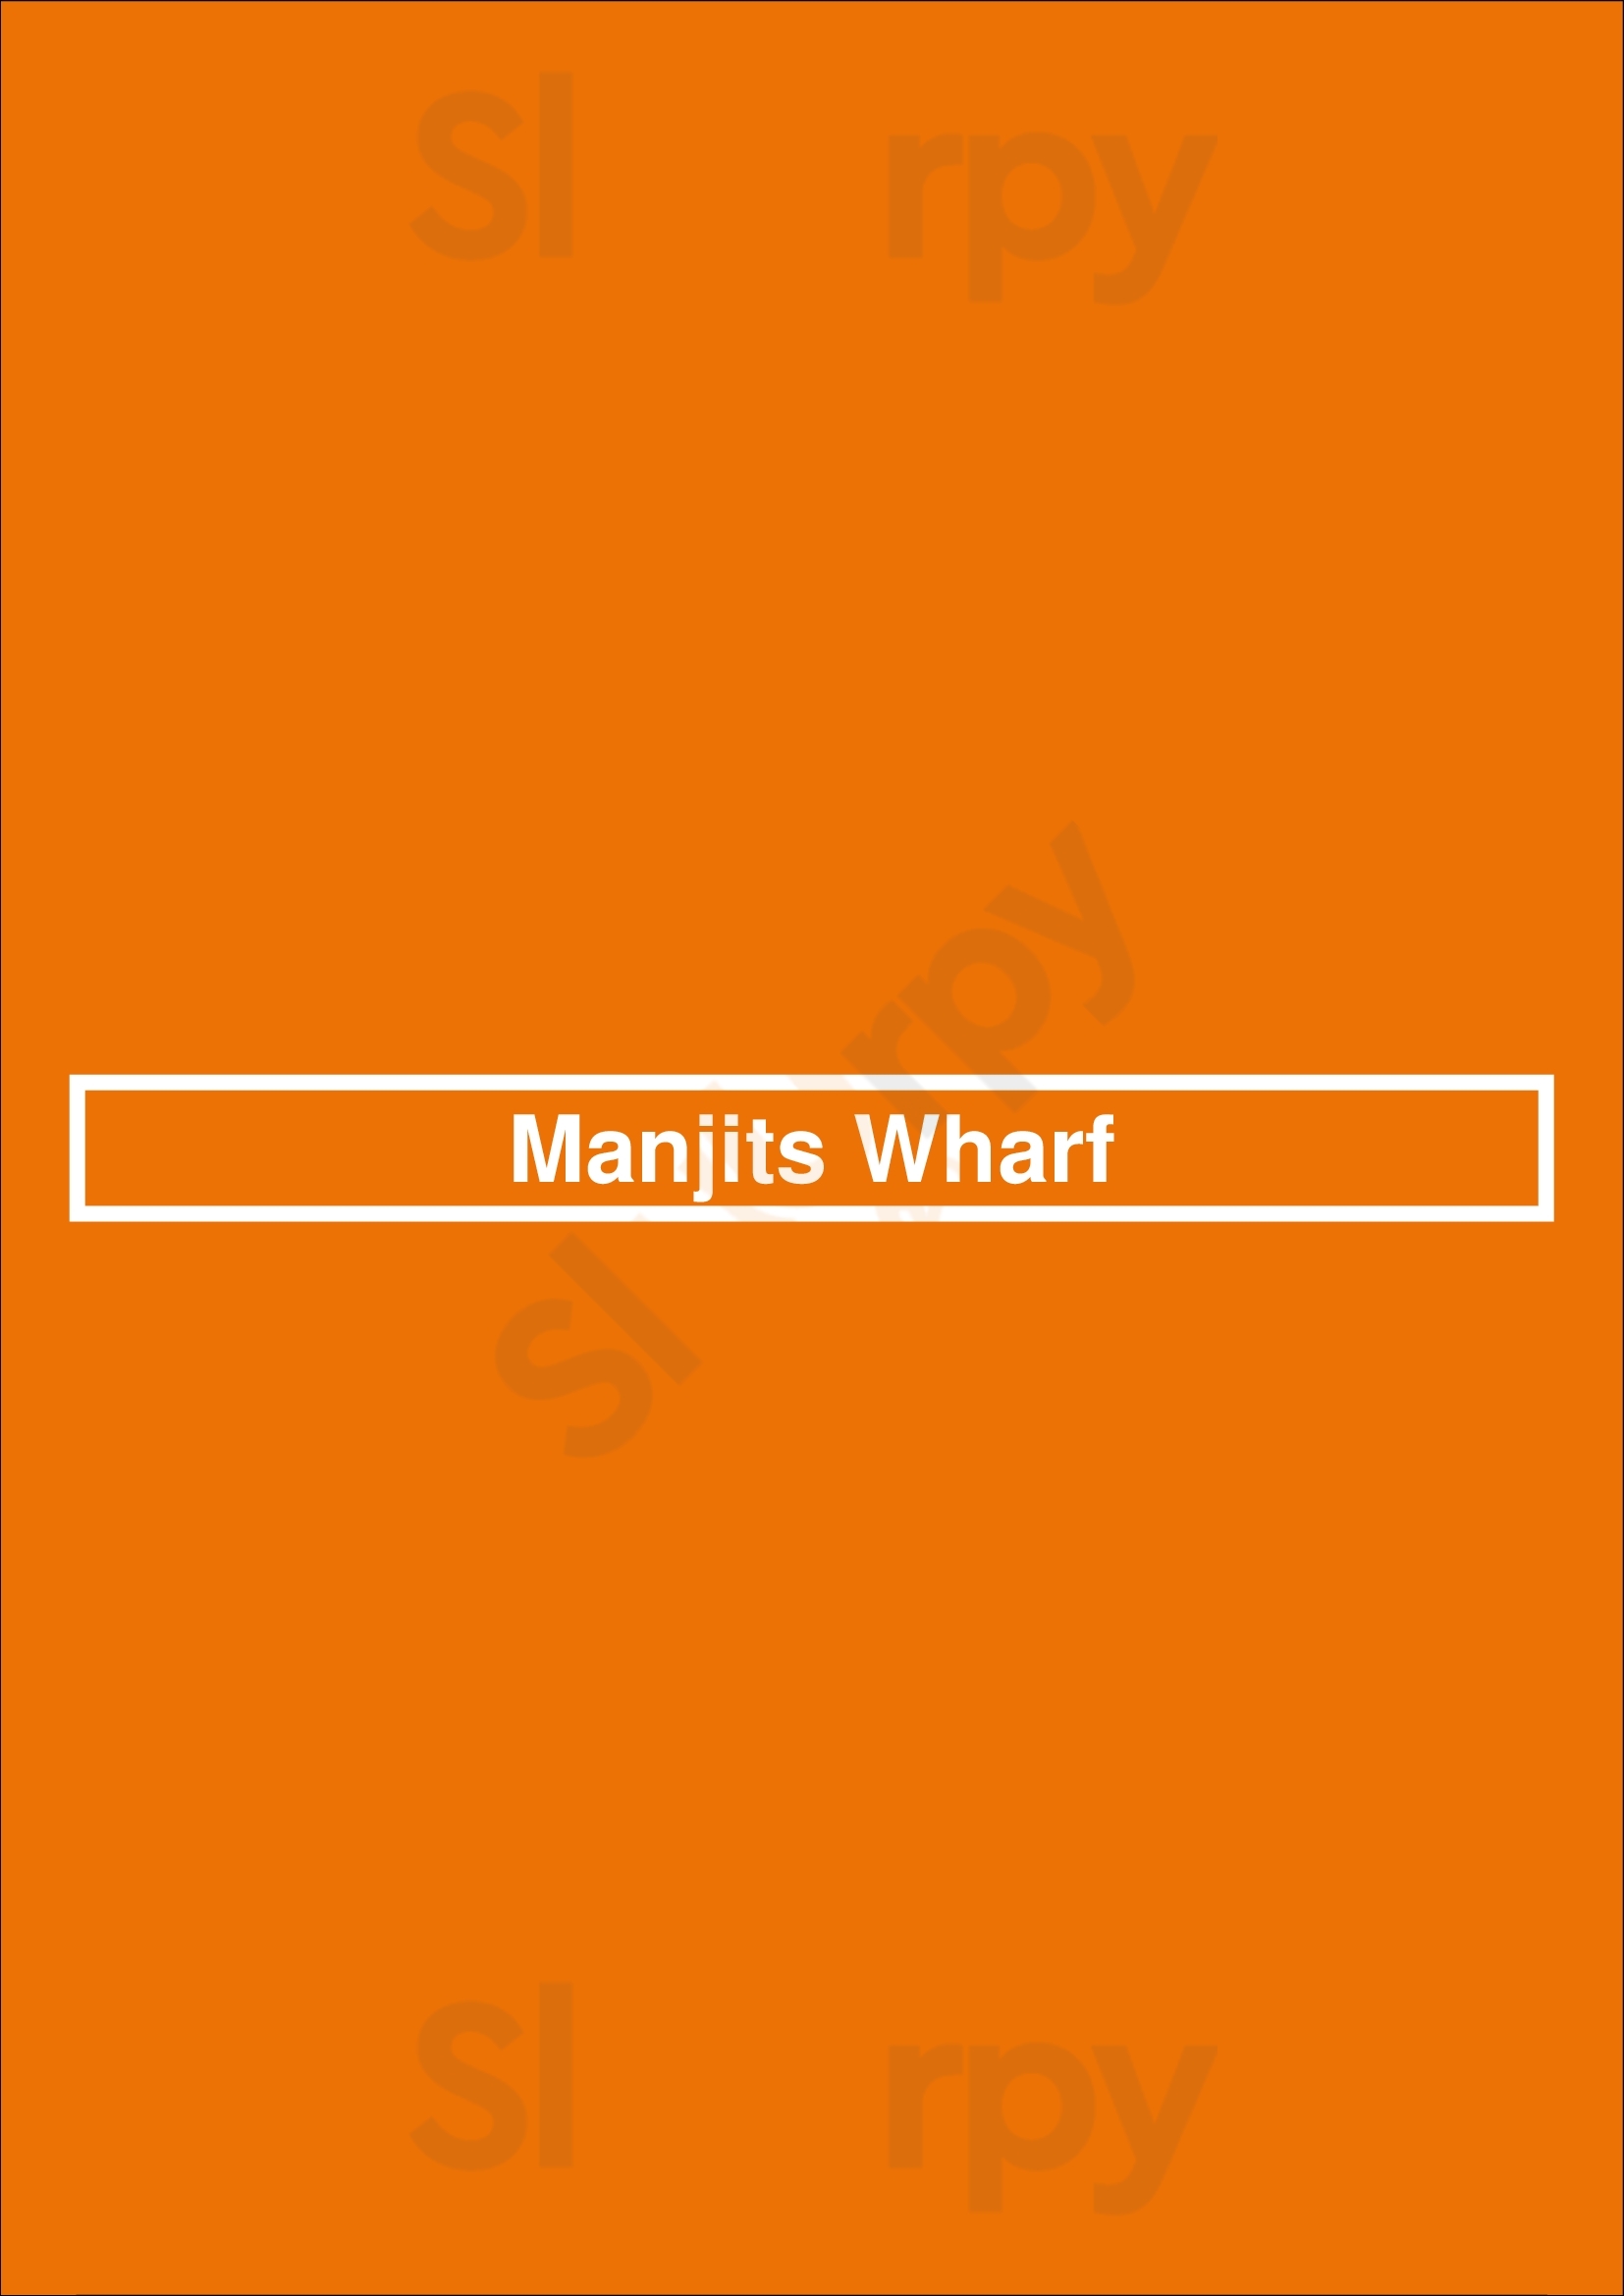 Manjits Wharf Sydney Menu - 1